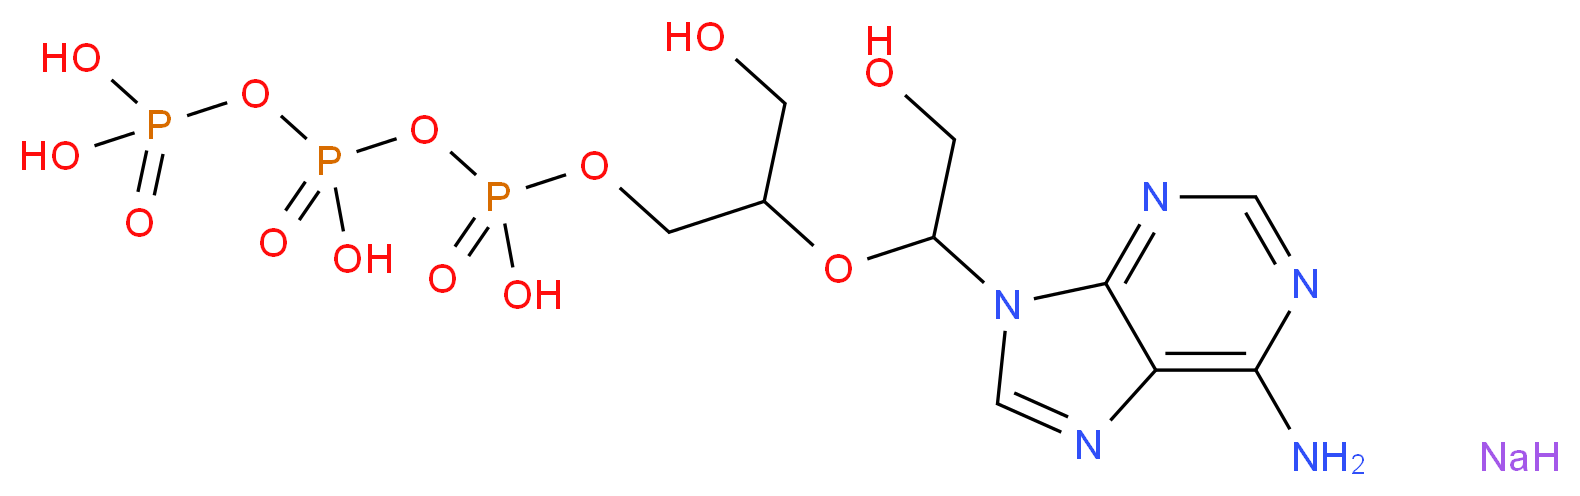 102185-15-9 molecular structure